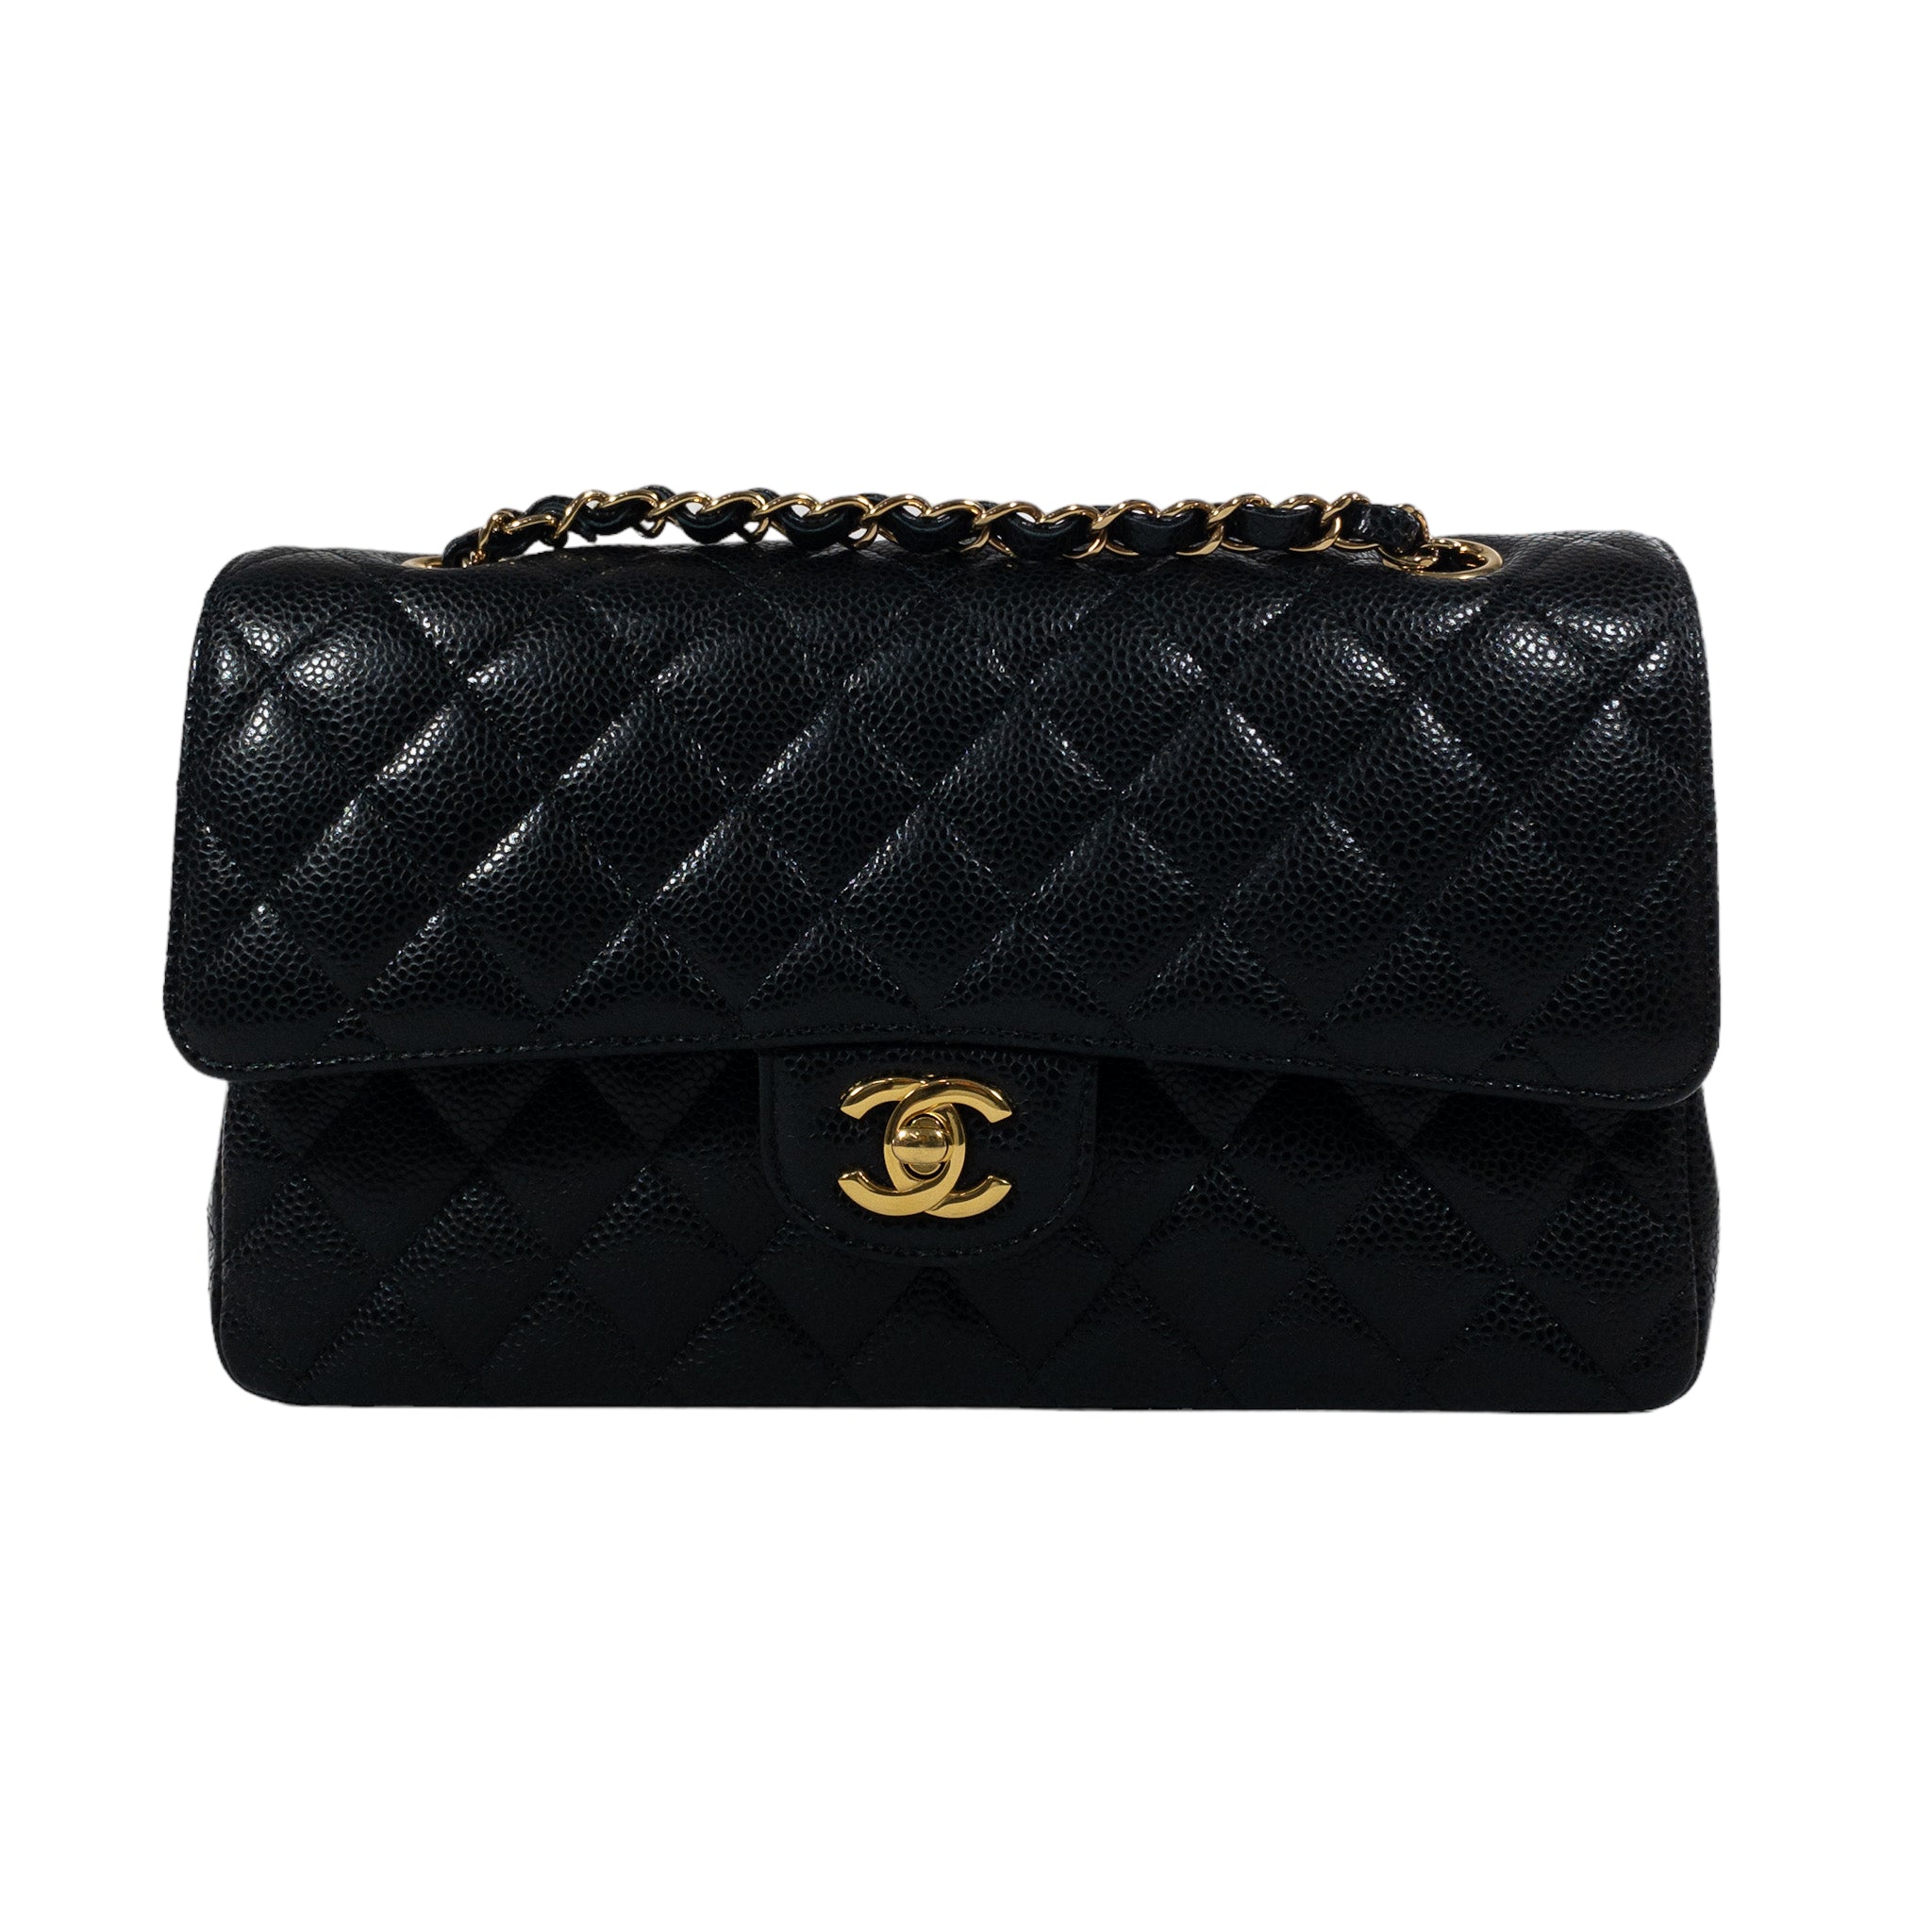 Chanel Black Caviar Medium Classic Flap GHW